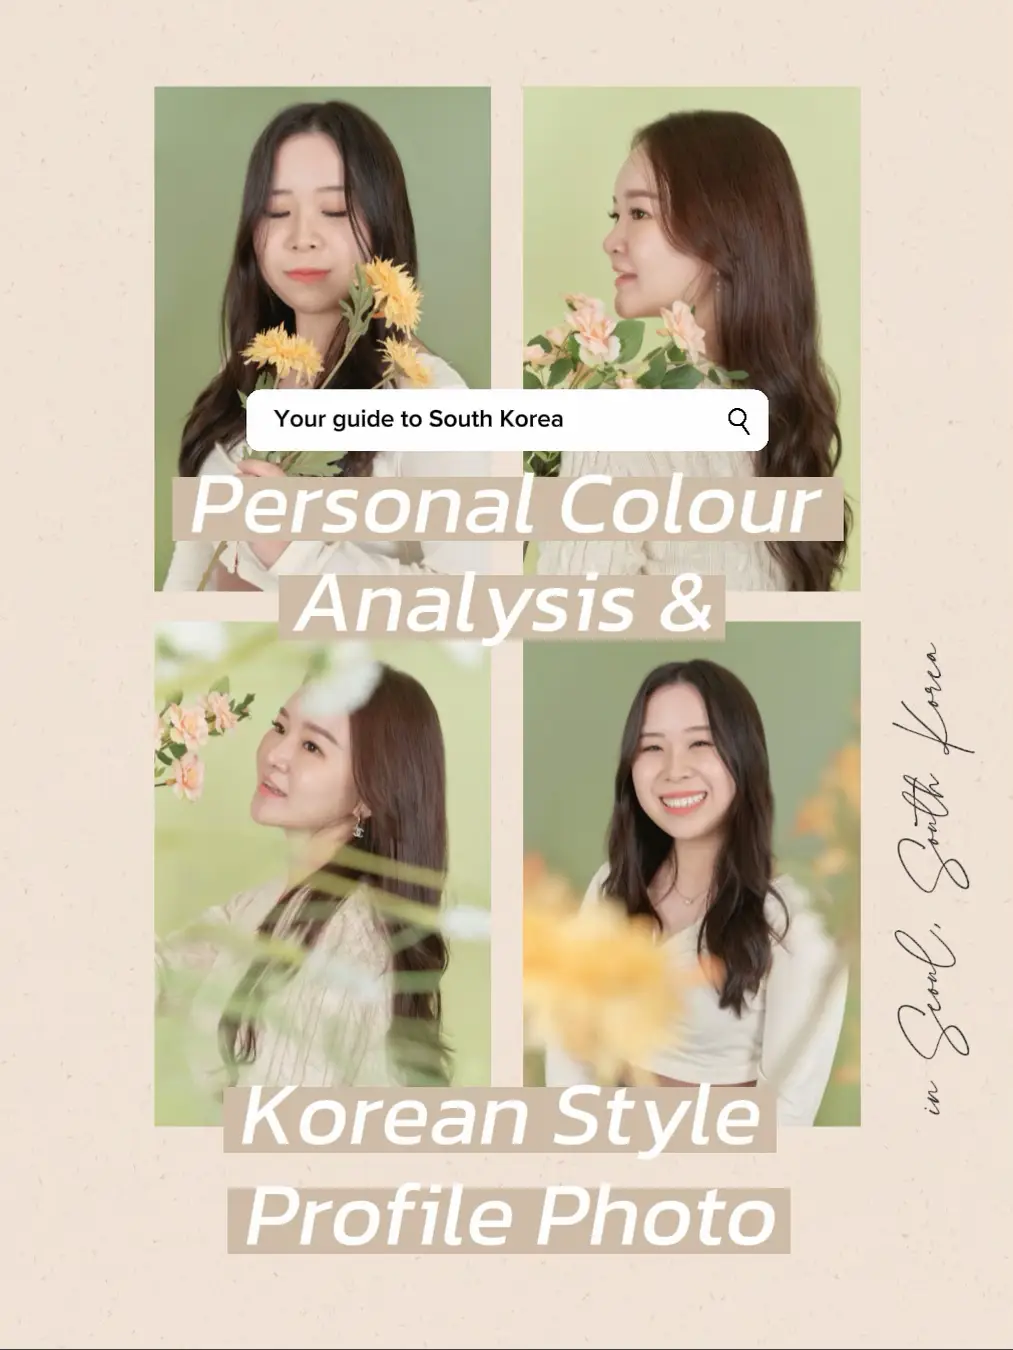 Profile photo studio seoul - Lemon8 Search